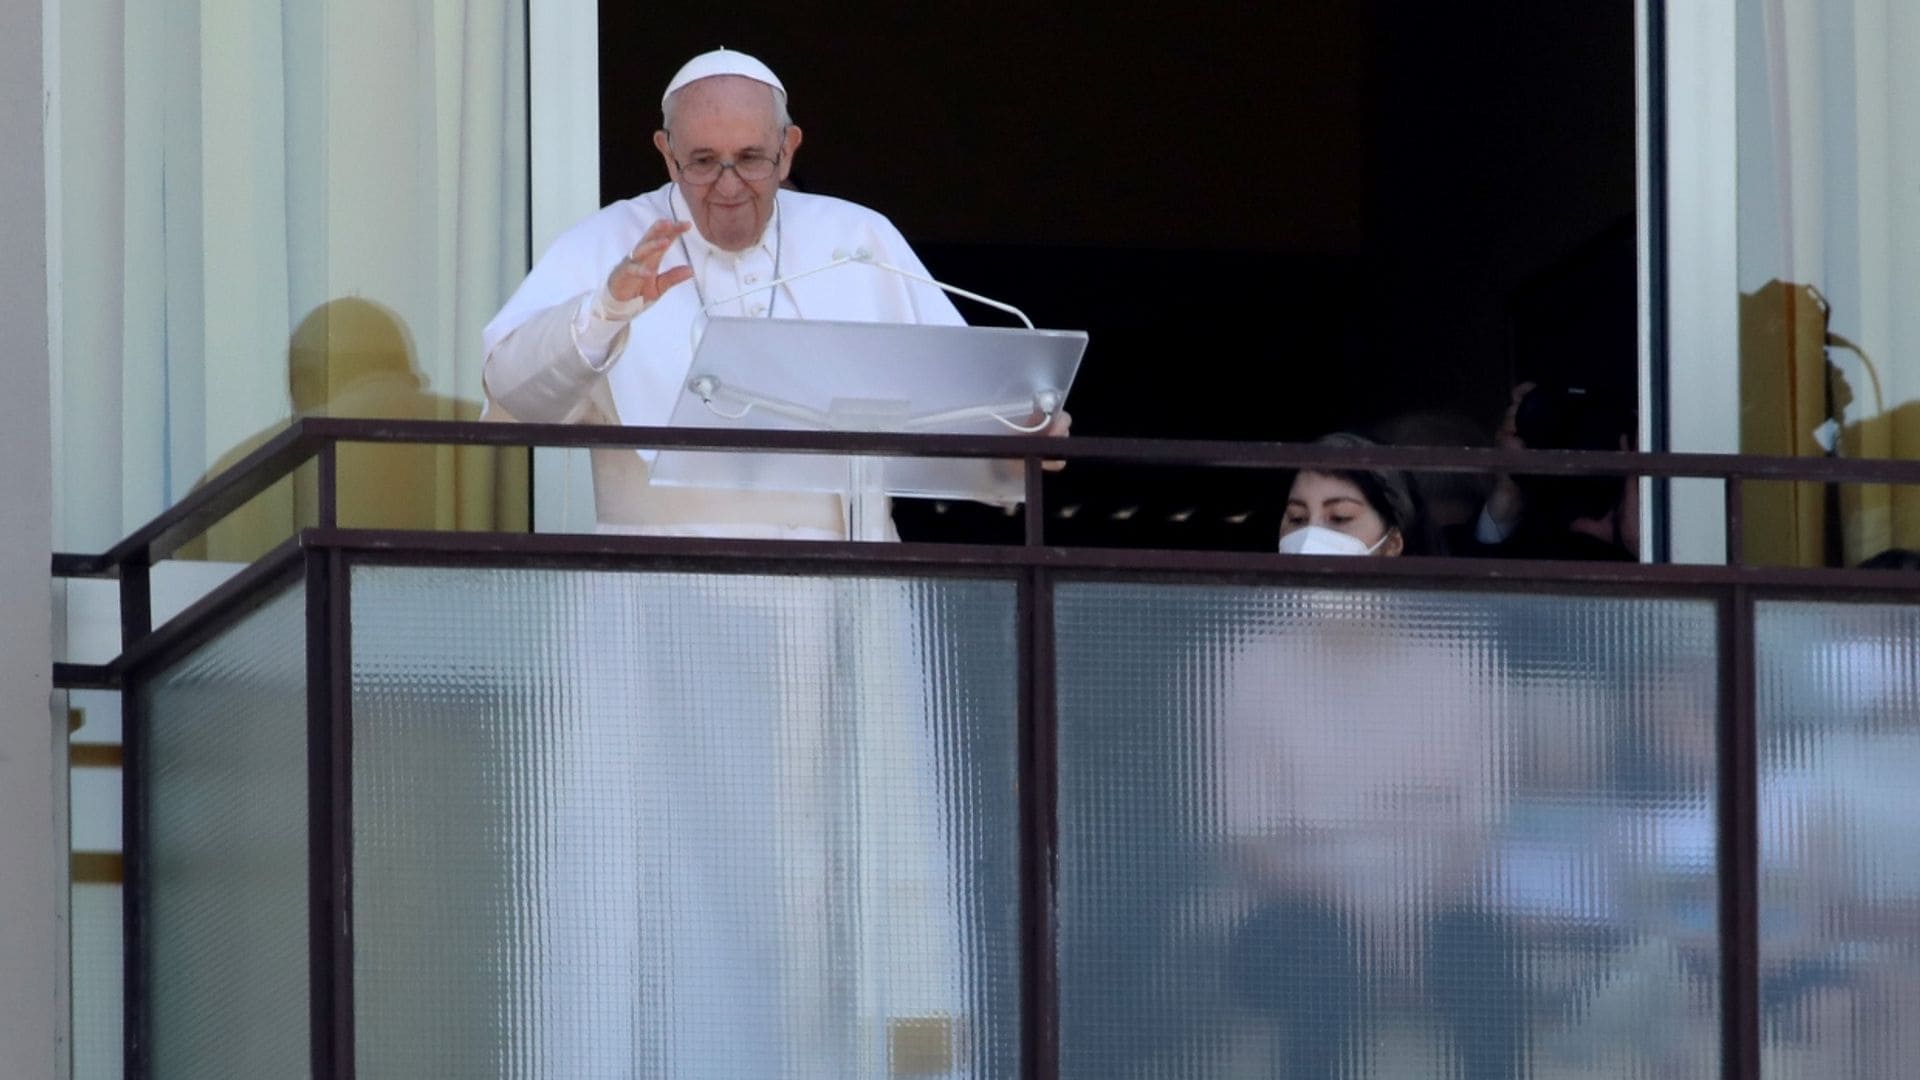 El Papa Francisco reaparece una semana después de su operación de colon